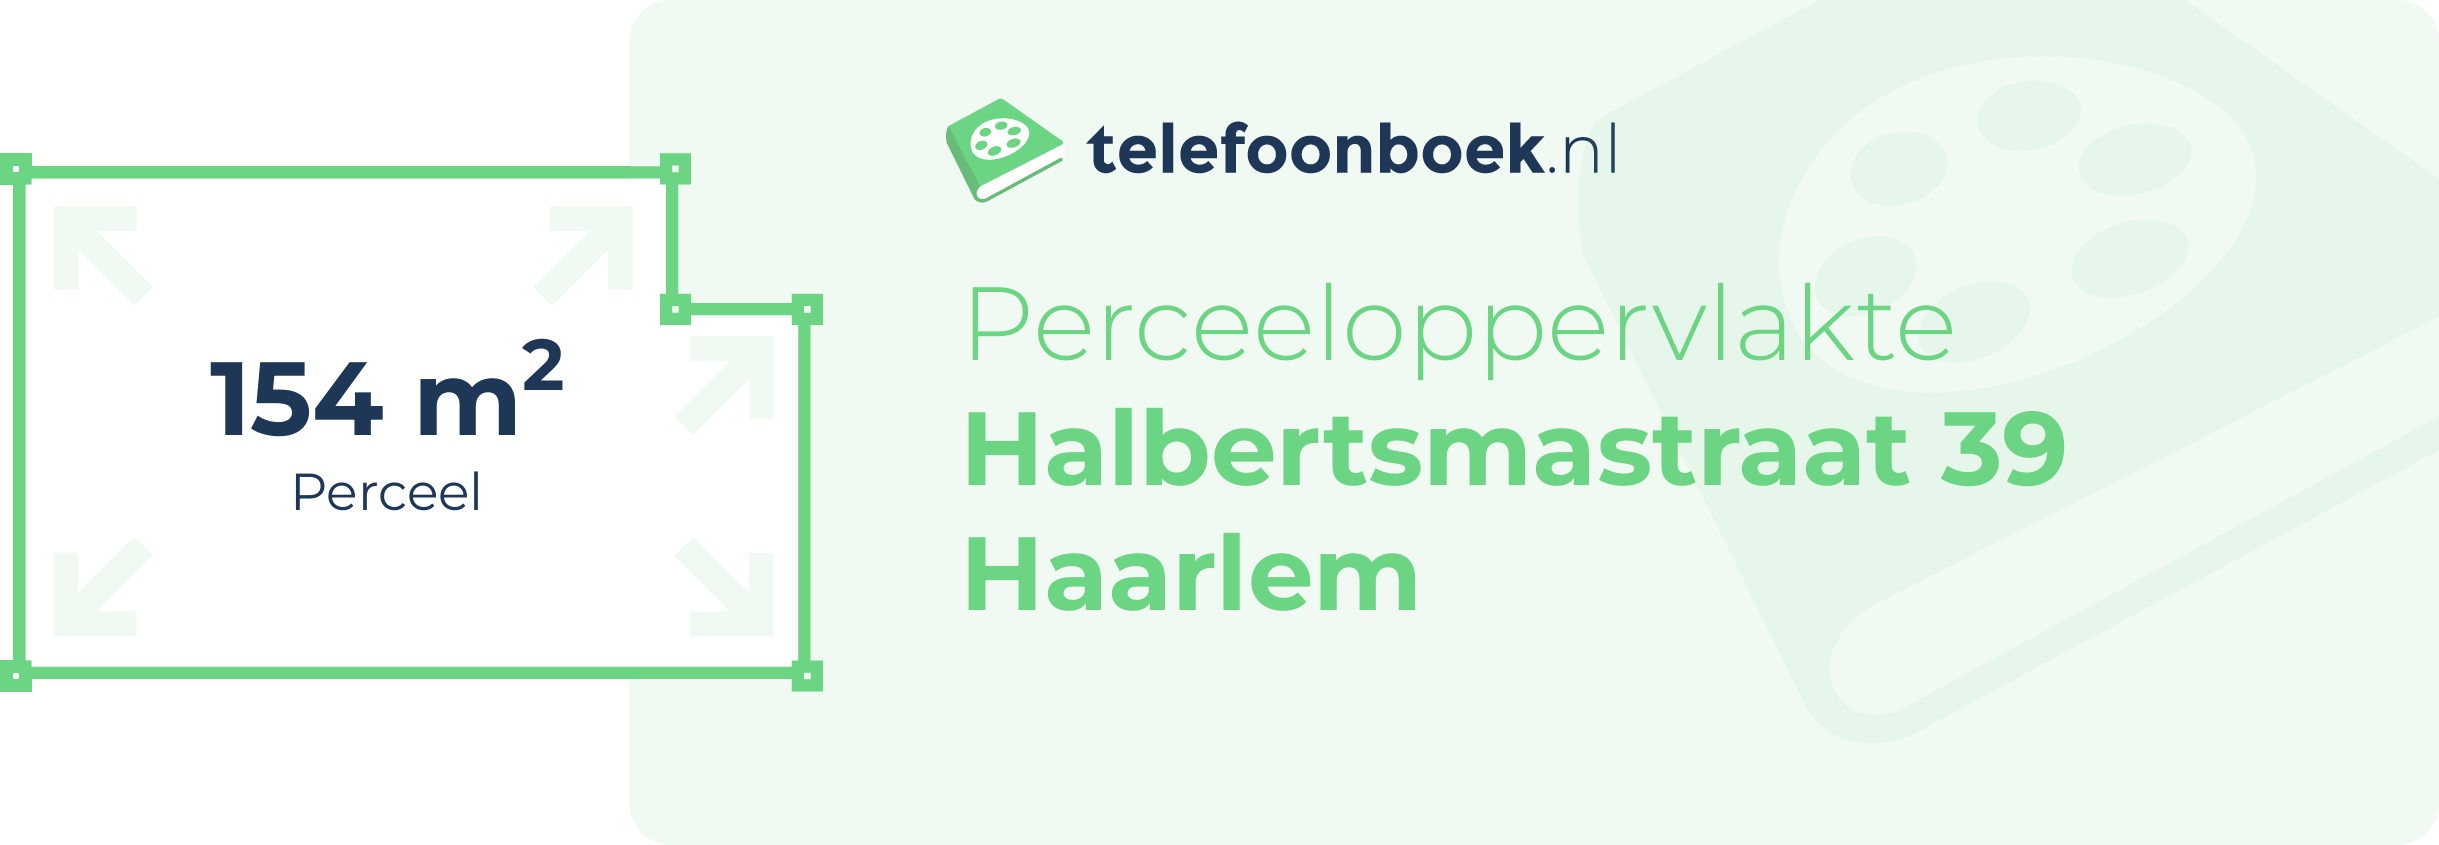 Perceeloppervlakte Halbertsmastraat 39 Haarlem